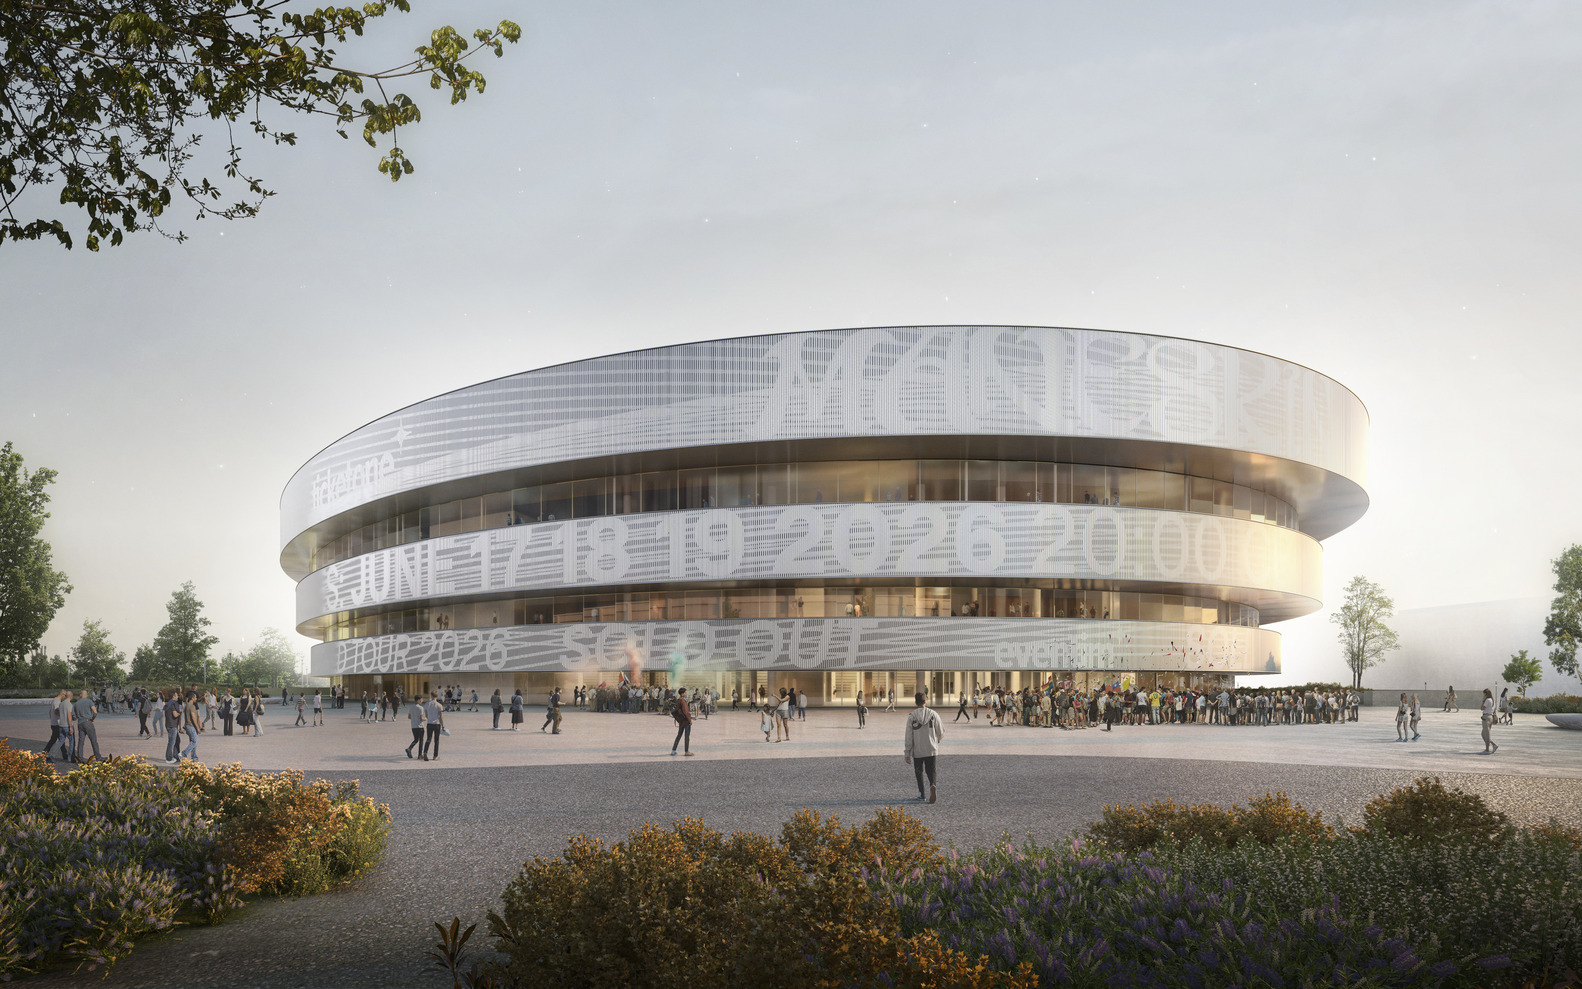 Diseñan la Arena de los Juegos Olímpicos 2026